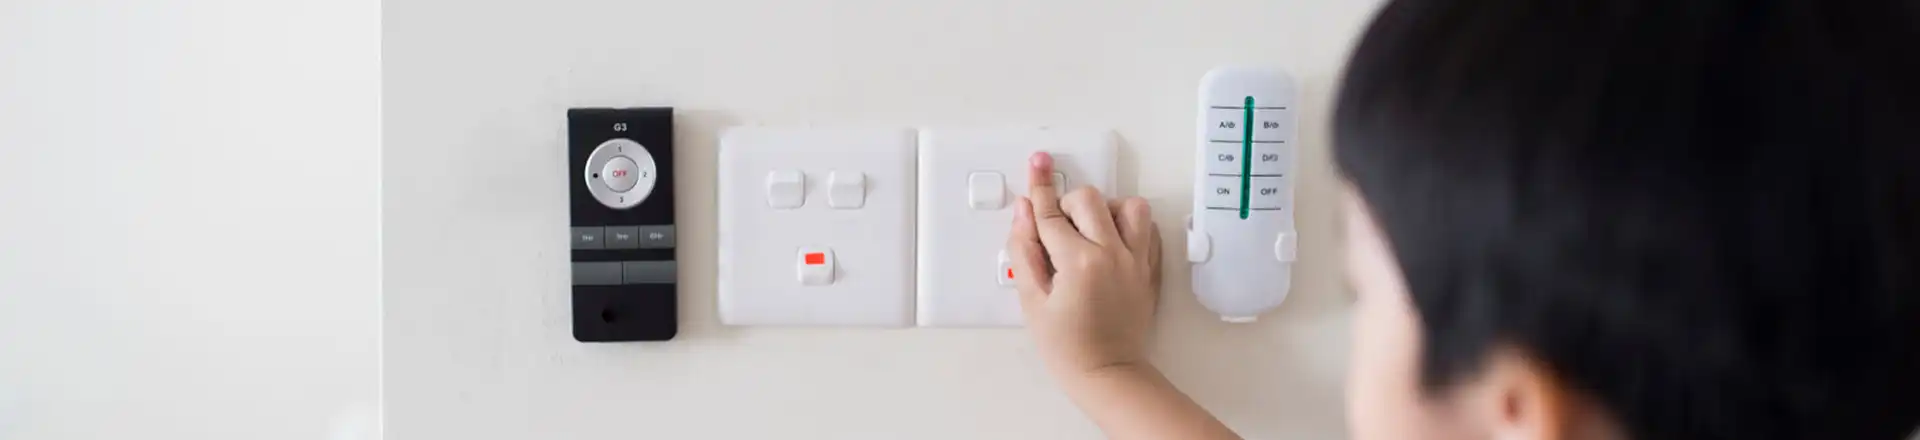 child touching light switch